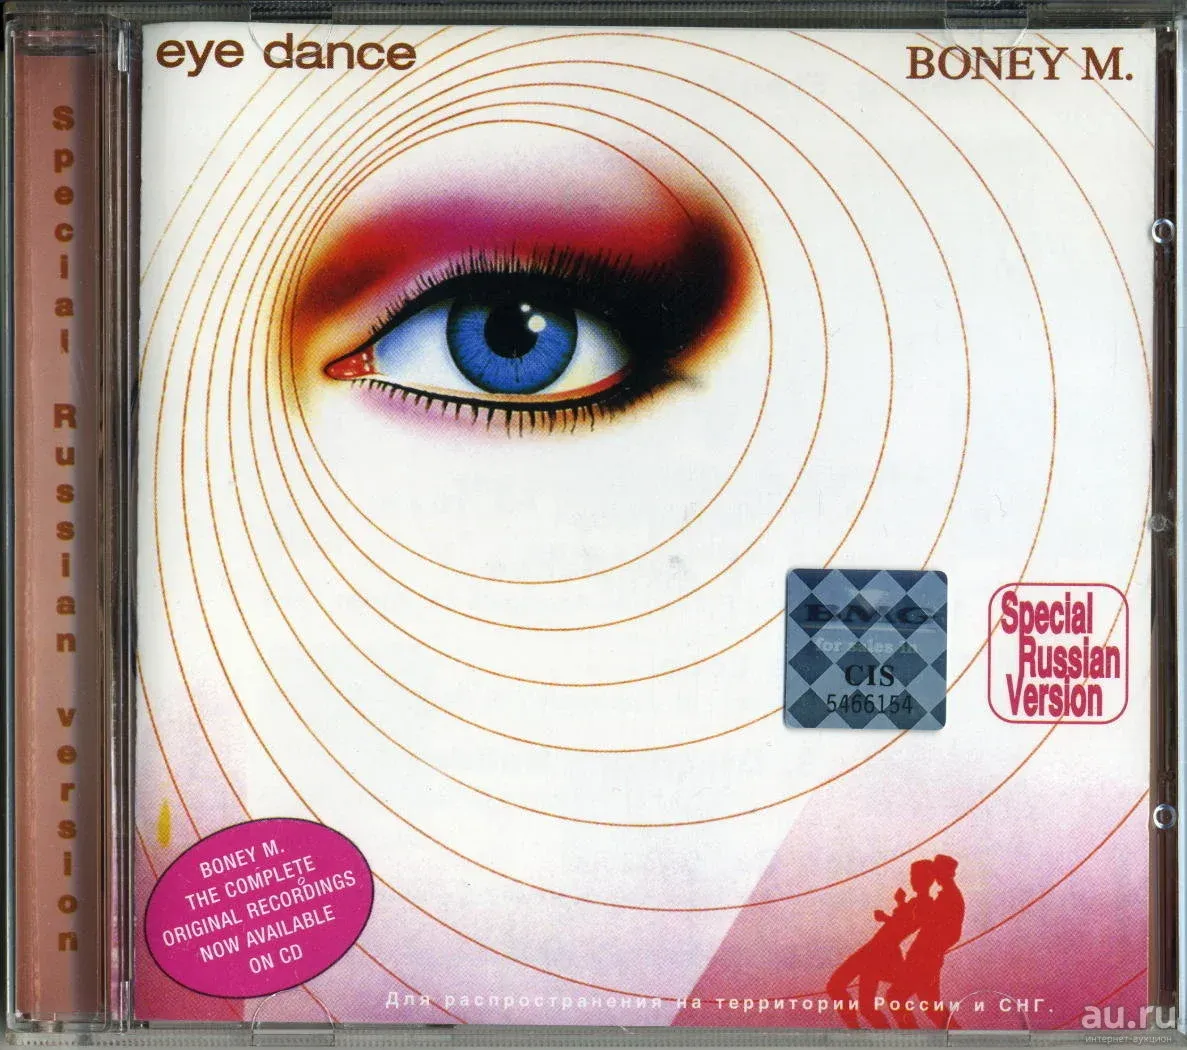 Boney m Eye Dance 1985. Boney m "Eye Dance".